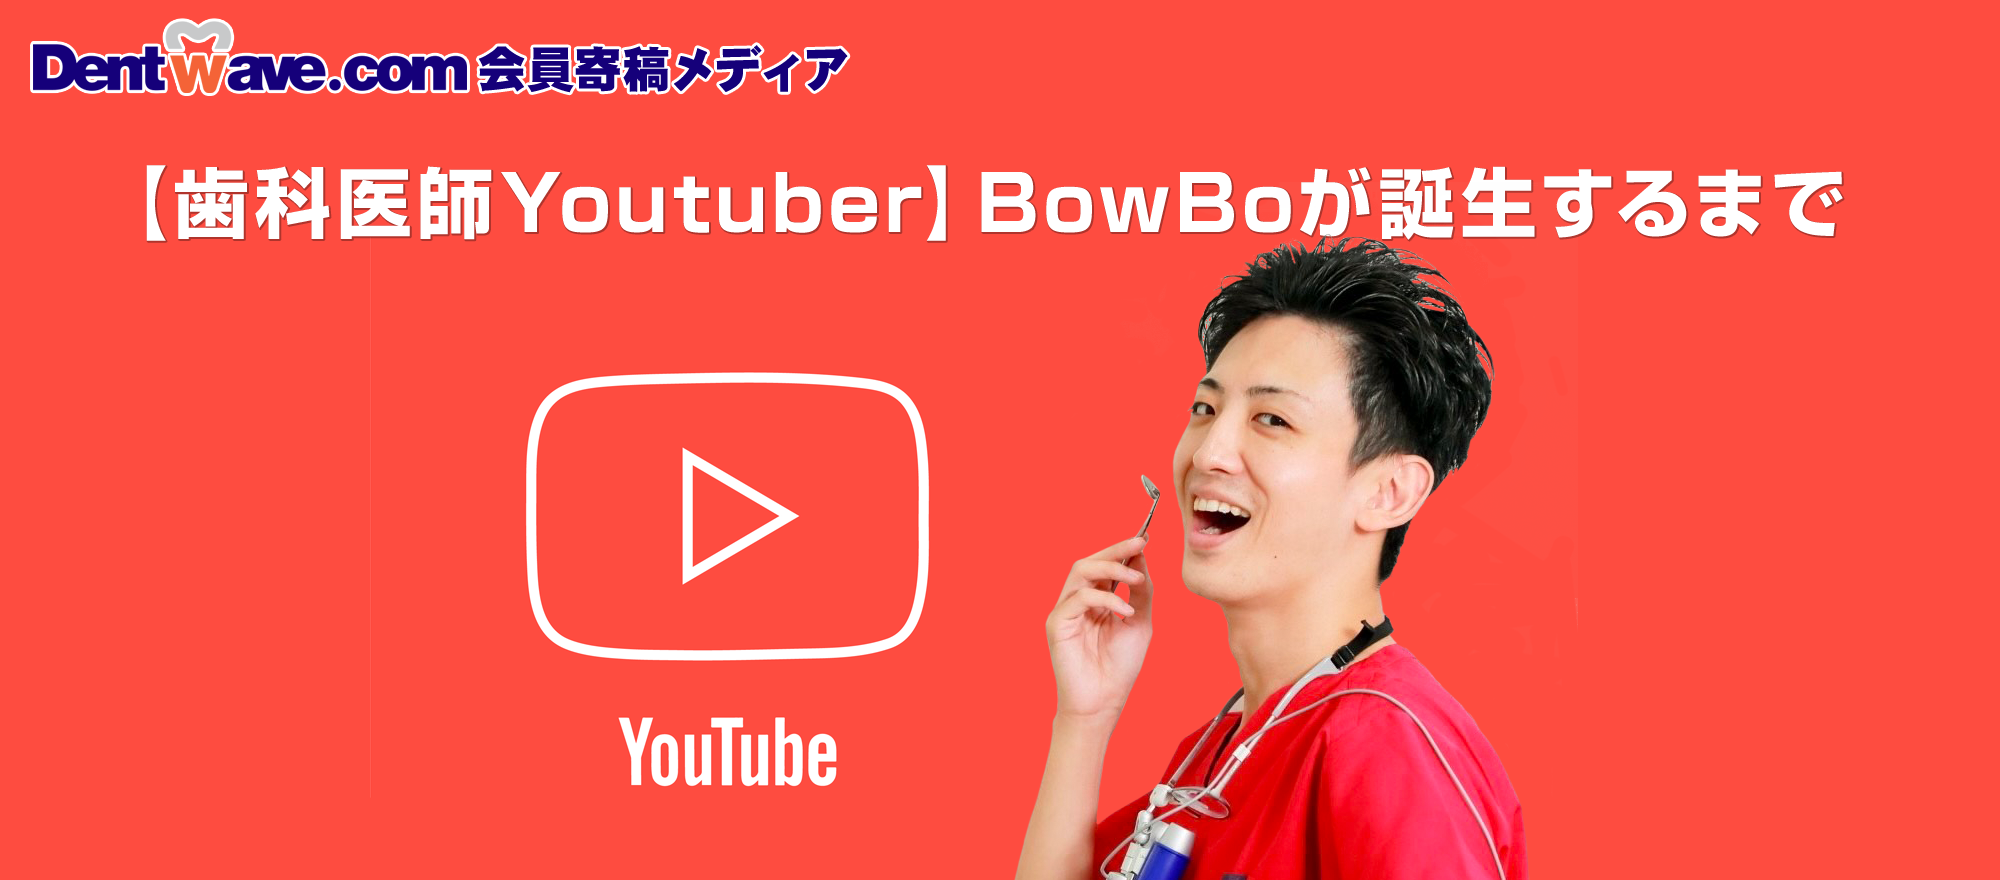 「歯科医師Youtuber」BowBoが誕生するまで【Dentwave.com会員寄稿メディア】